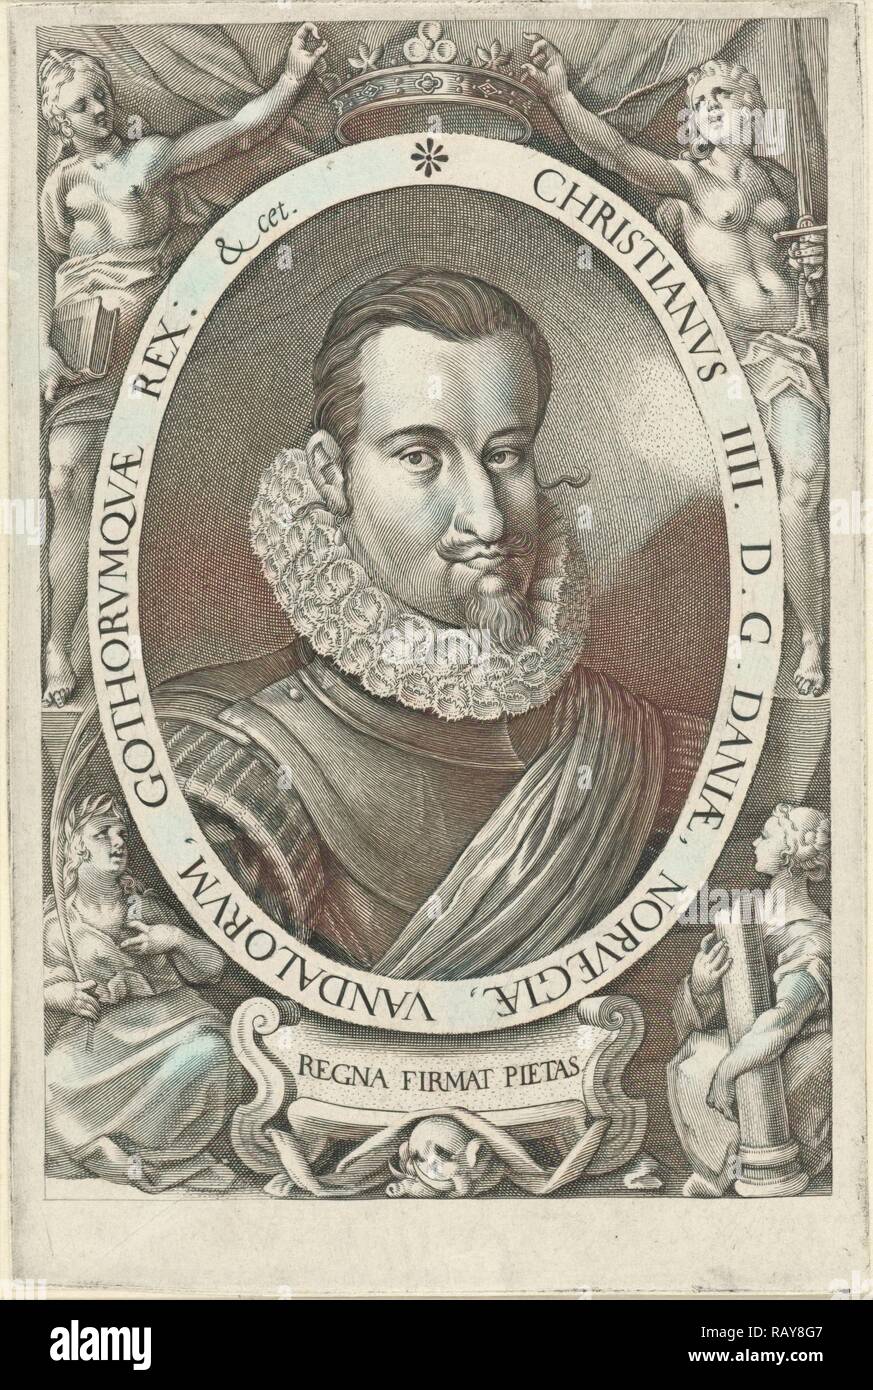 Portrait of King Christian IV of Denmark and Norway, Jan Harmensz. Muller, Remmert Petersen, 1604 - 1608. Reimagined Stock Photo